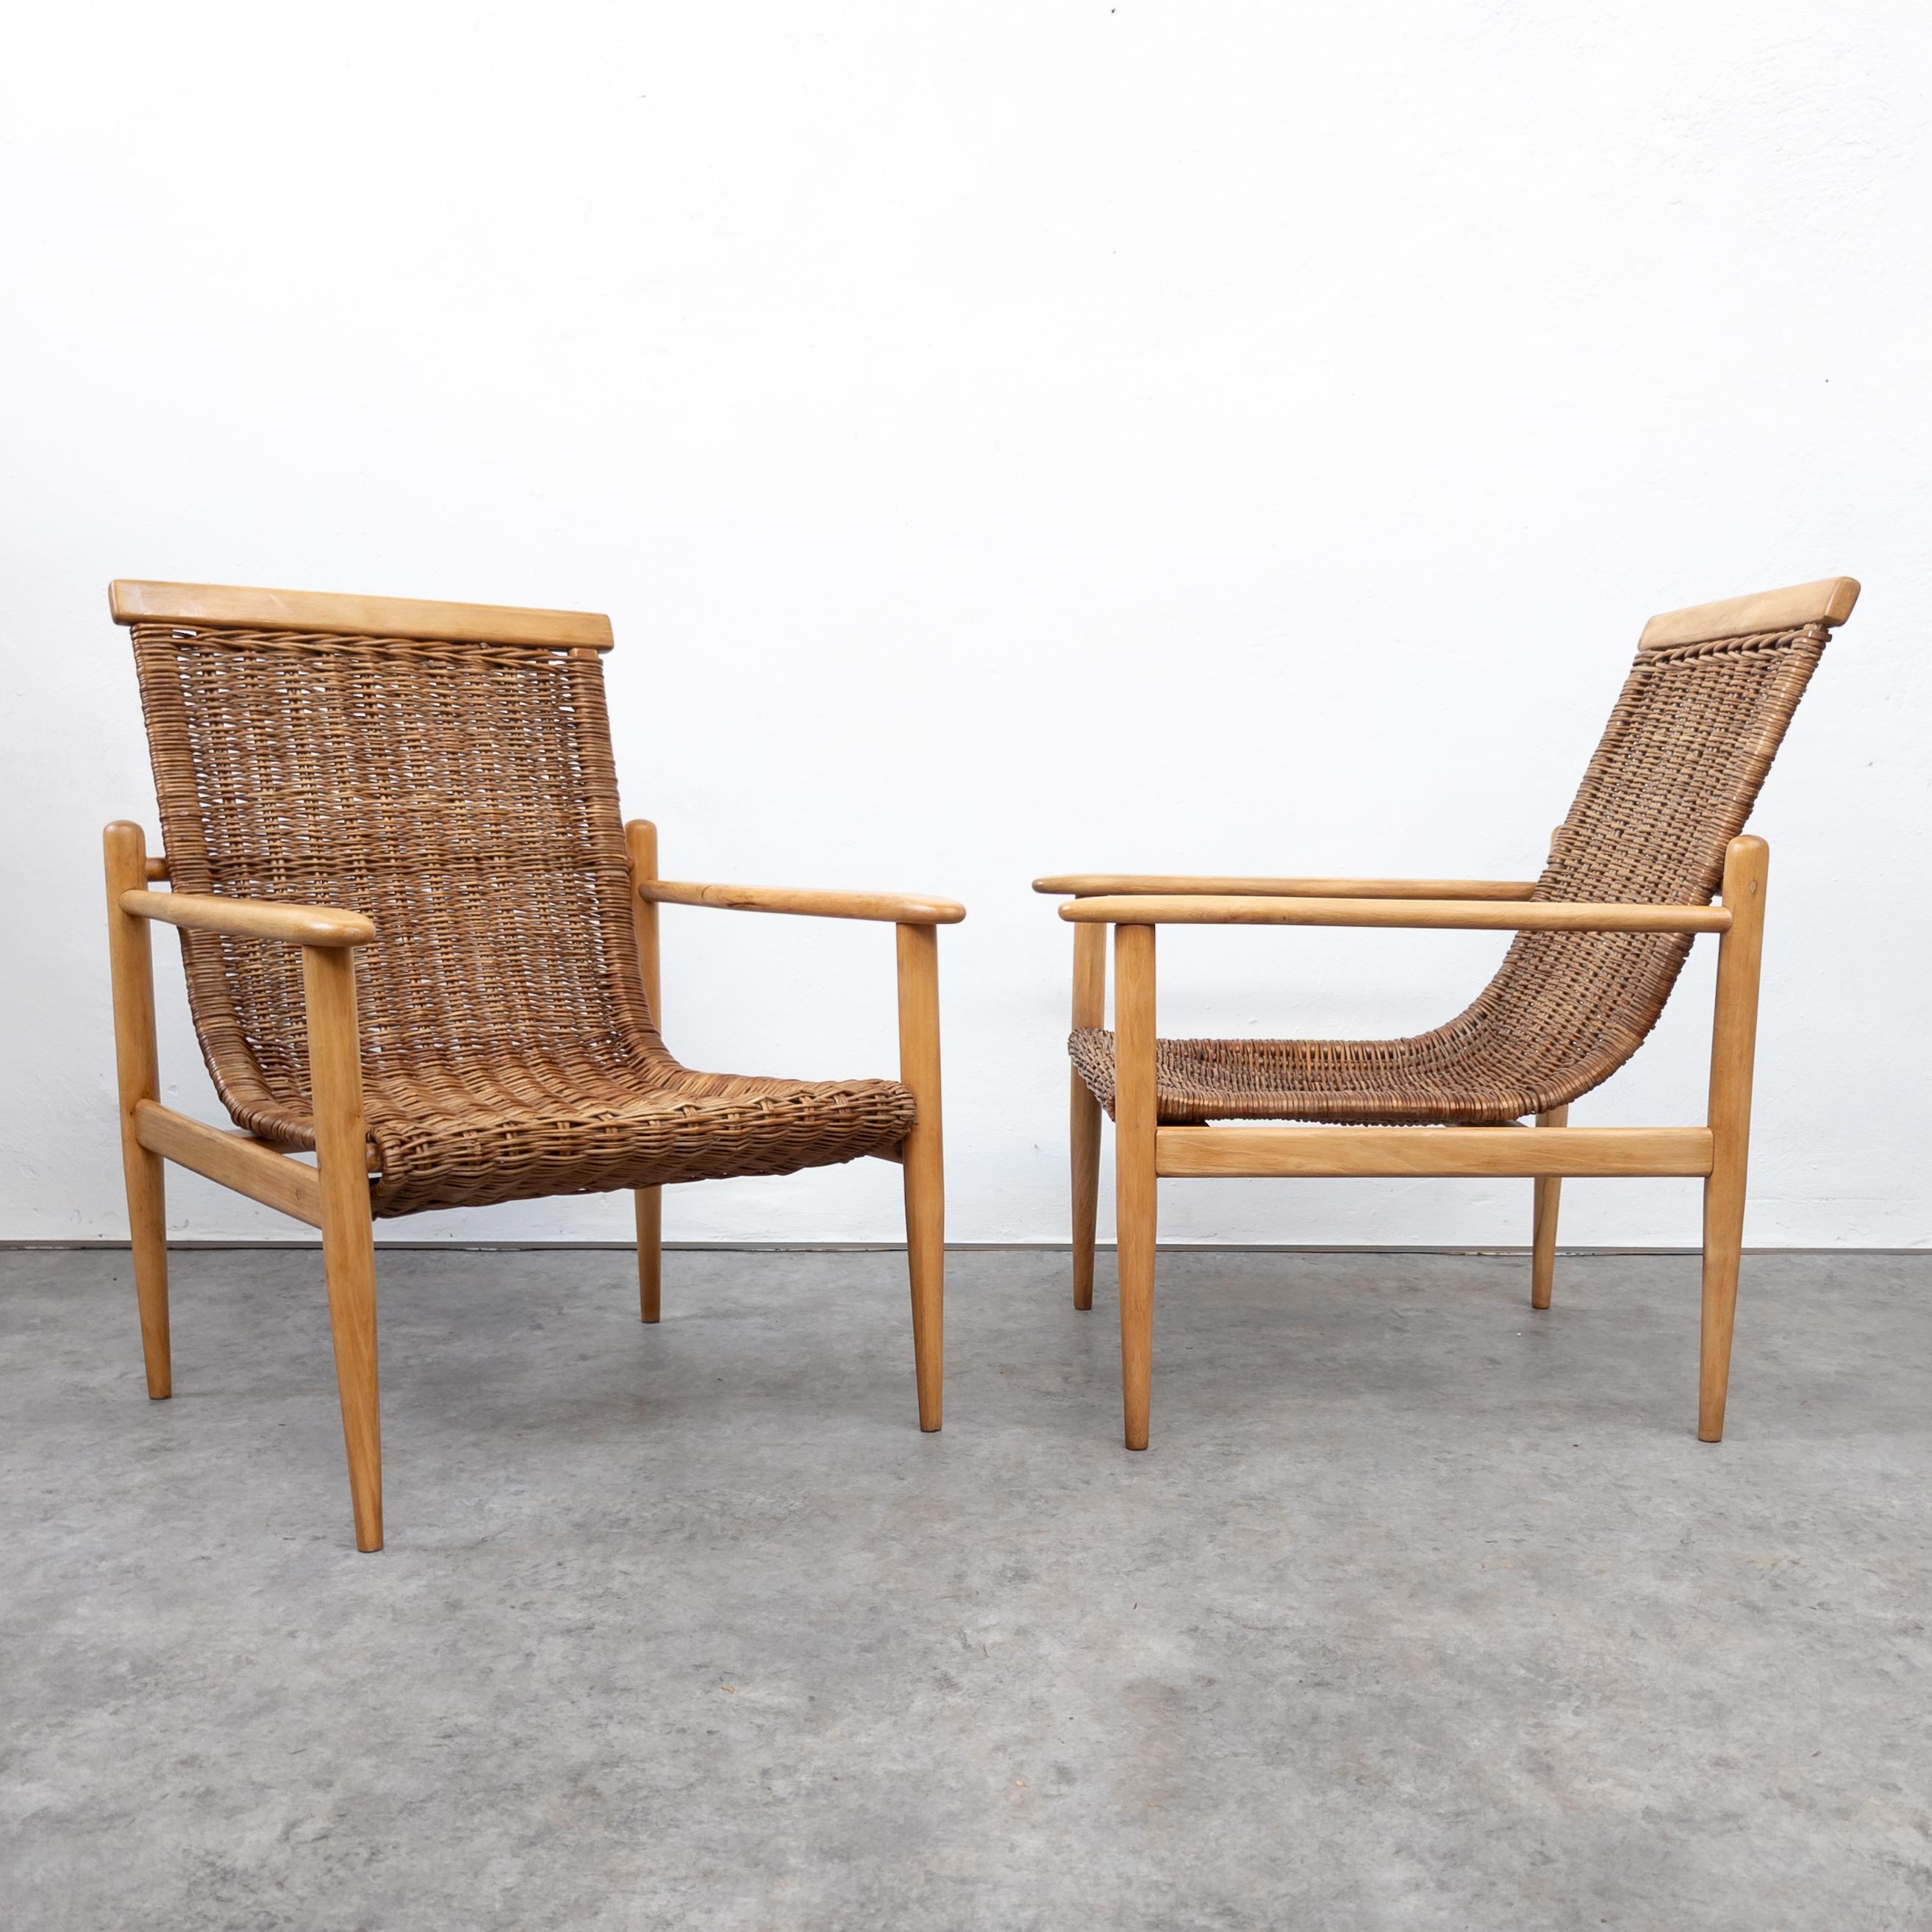 Paire de fauteuils rares et uniques conçus par l'architecte tchèque Jan Kalous. Fabriqué par la coopérative ÚLUV, ancienne Tchécoslovaquie, dans les années 1960. Fabriqué en bois de hêtre et en rotin. Structure en bois entièrement restaurée par des